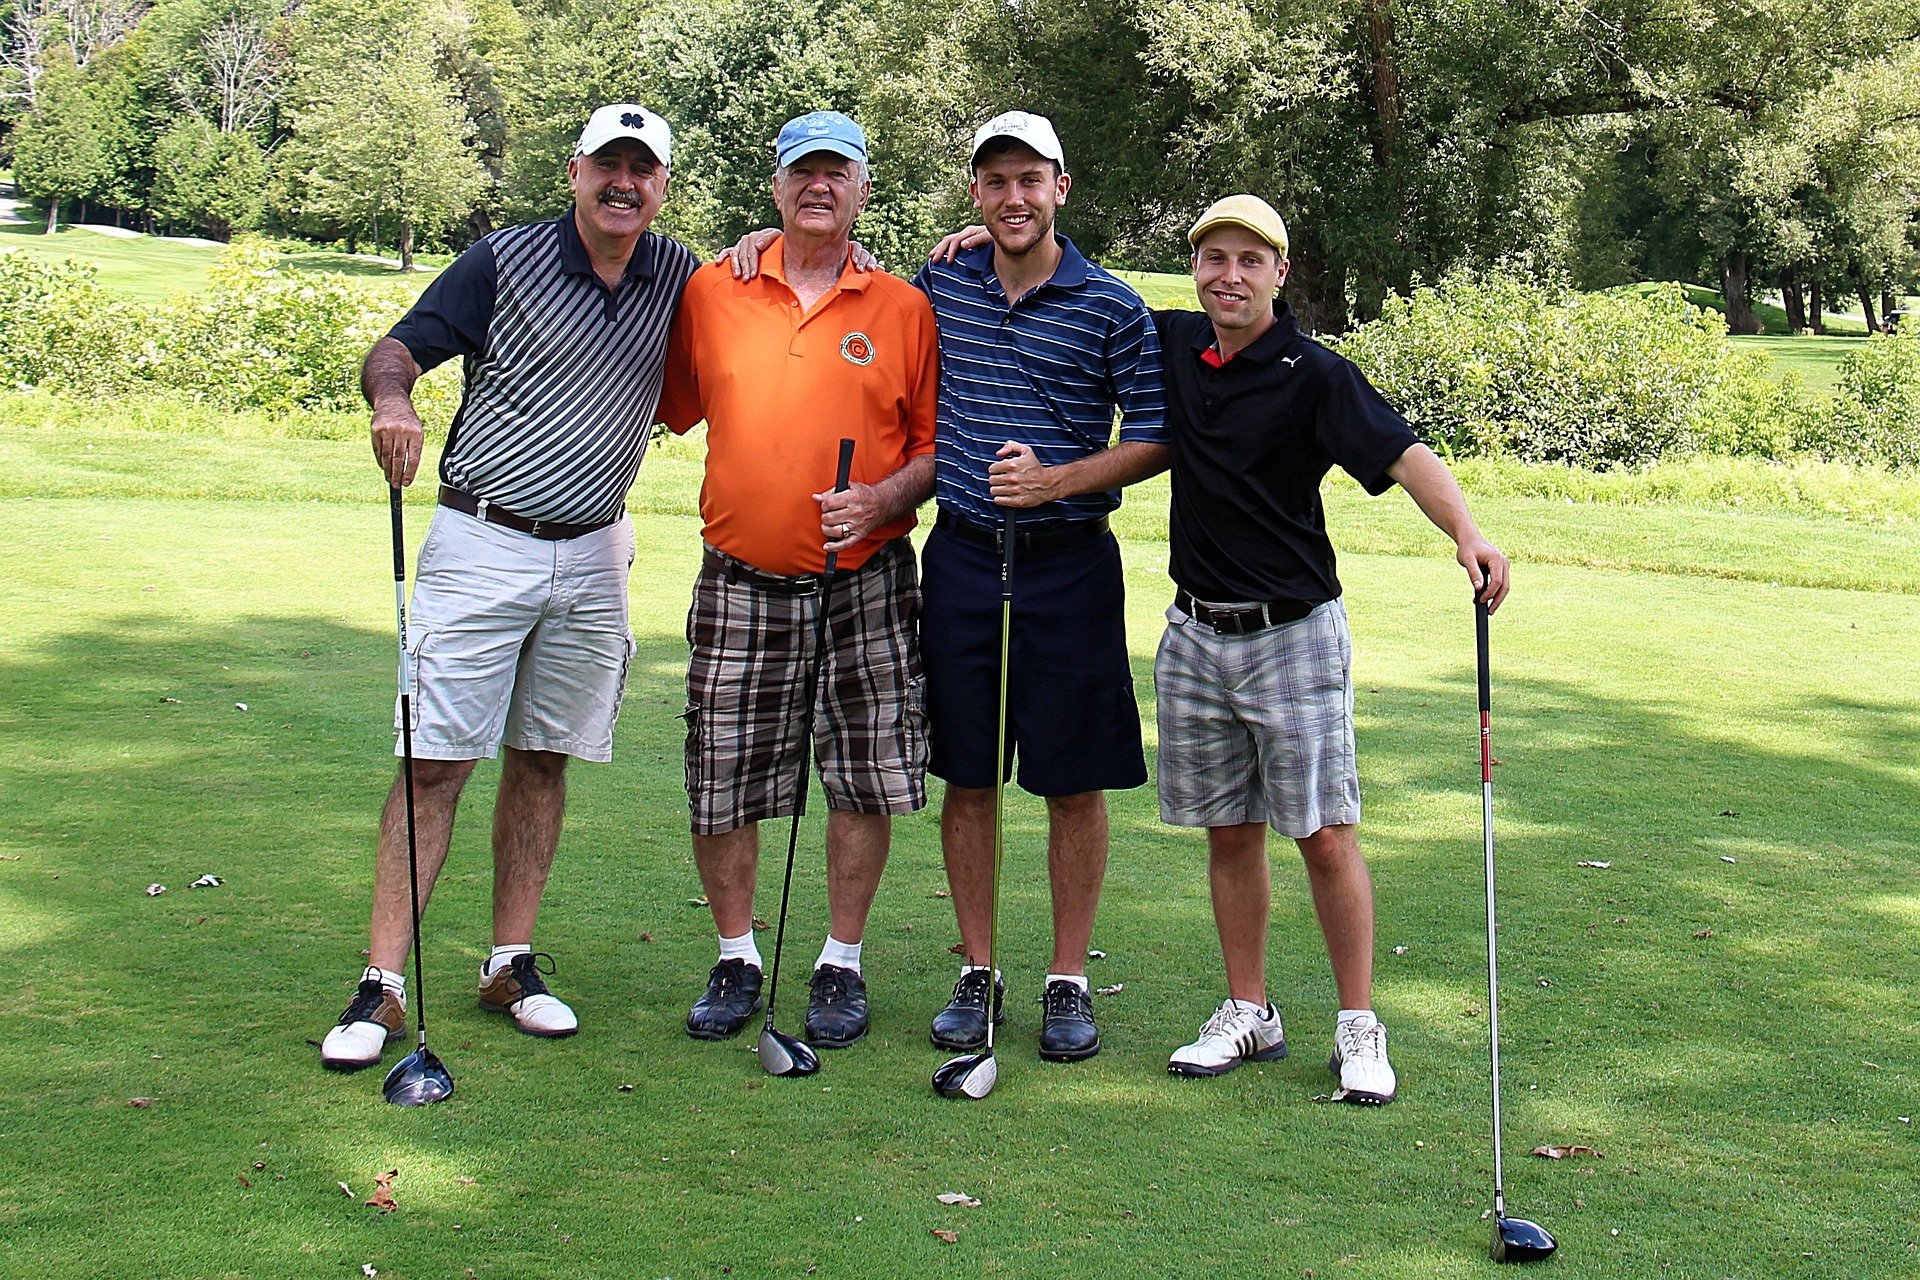 Homens de meia idade reunidos em campo de golfe